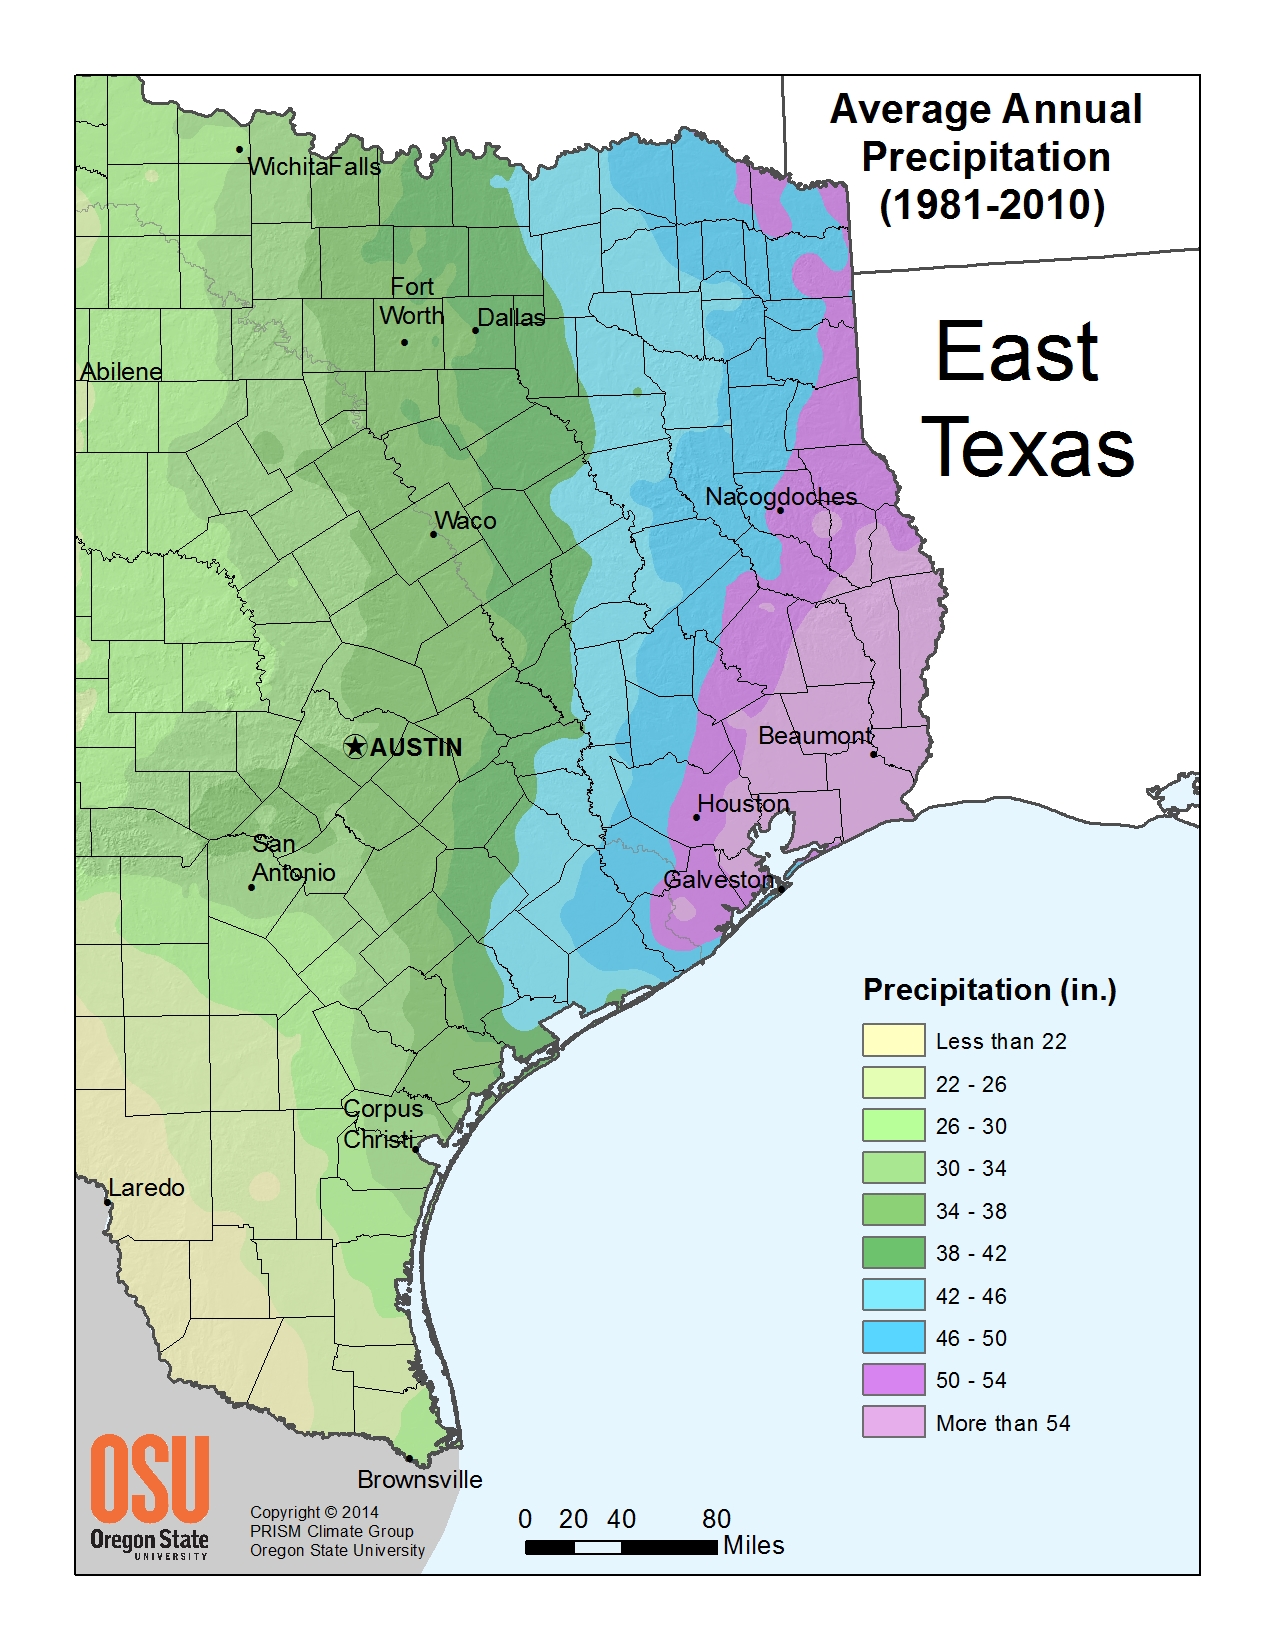 Annual Precipitation East Texas Image